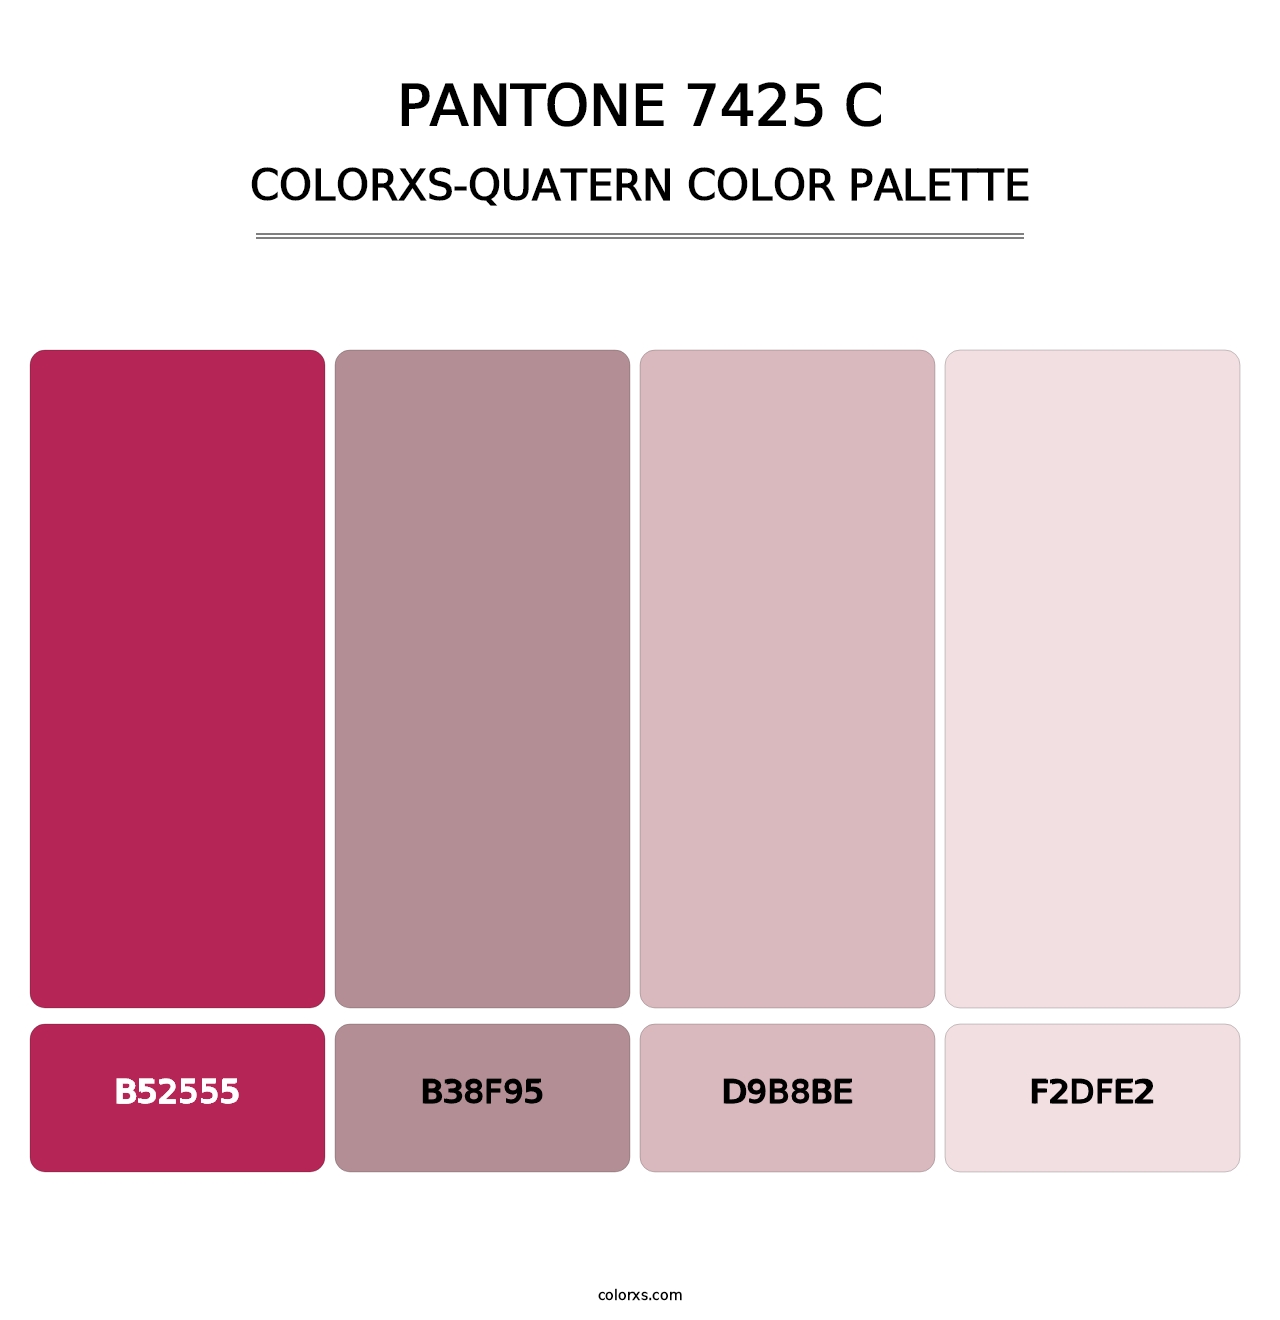 PANTONE 7425 C - Colorxs Quatern Palette